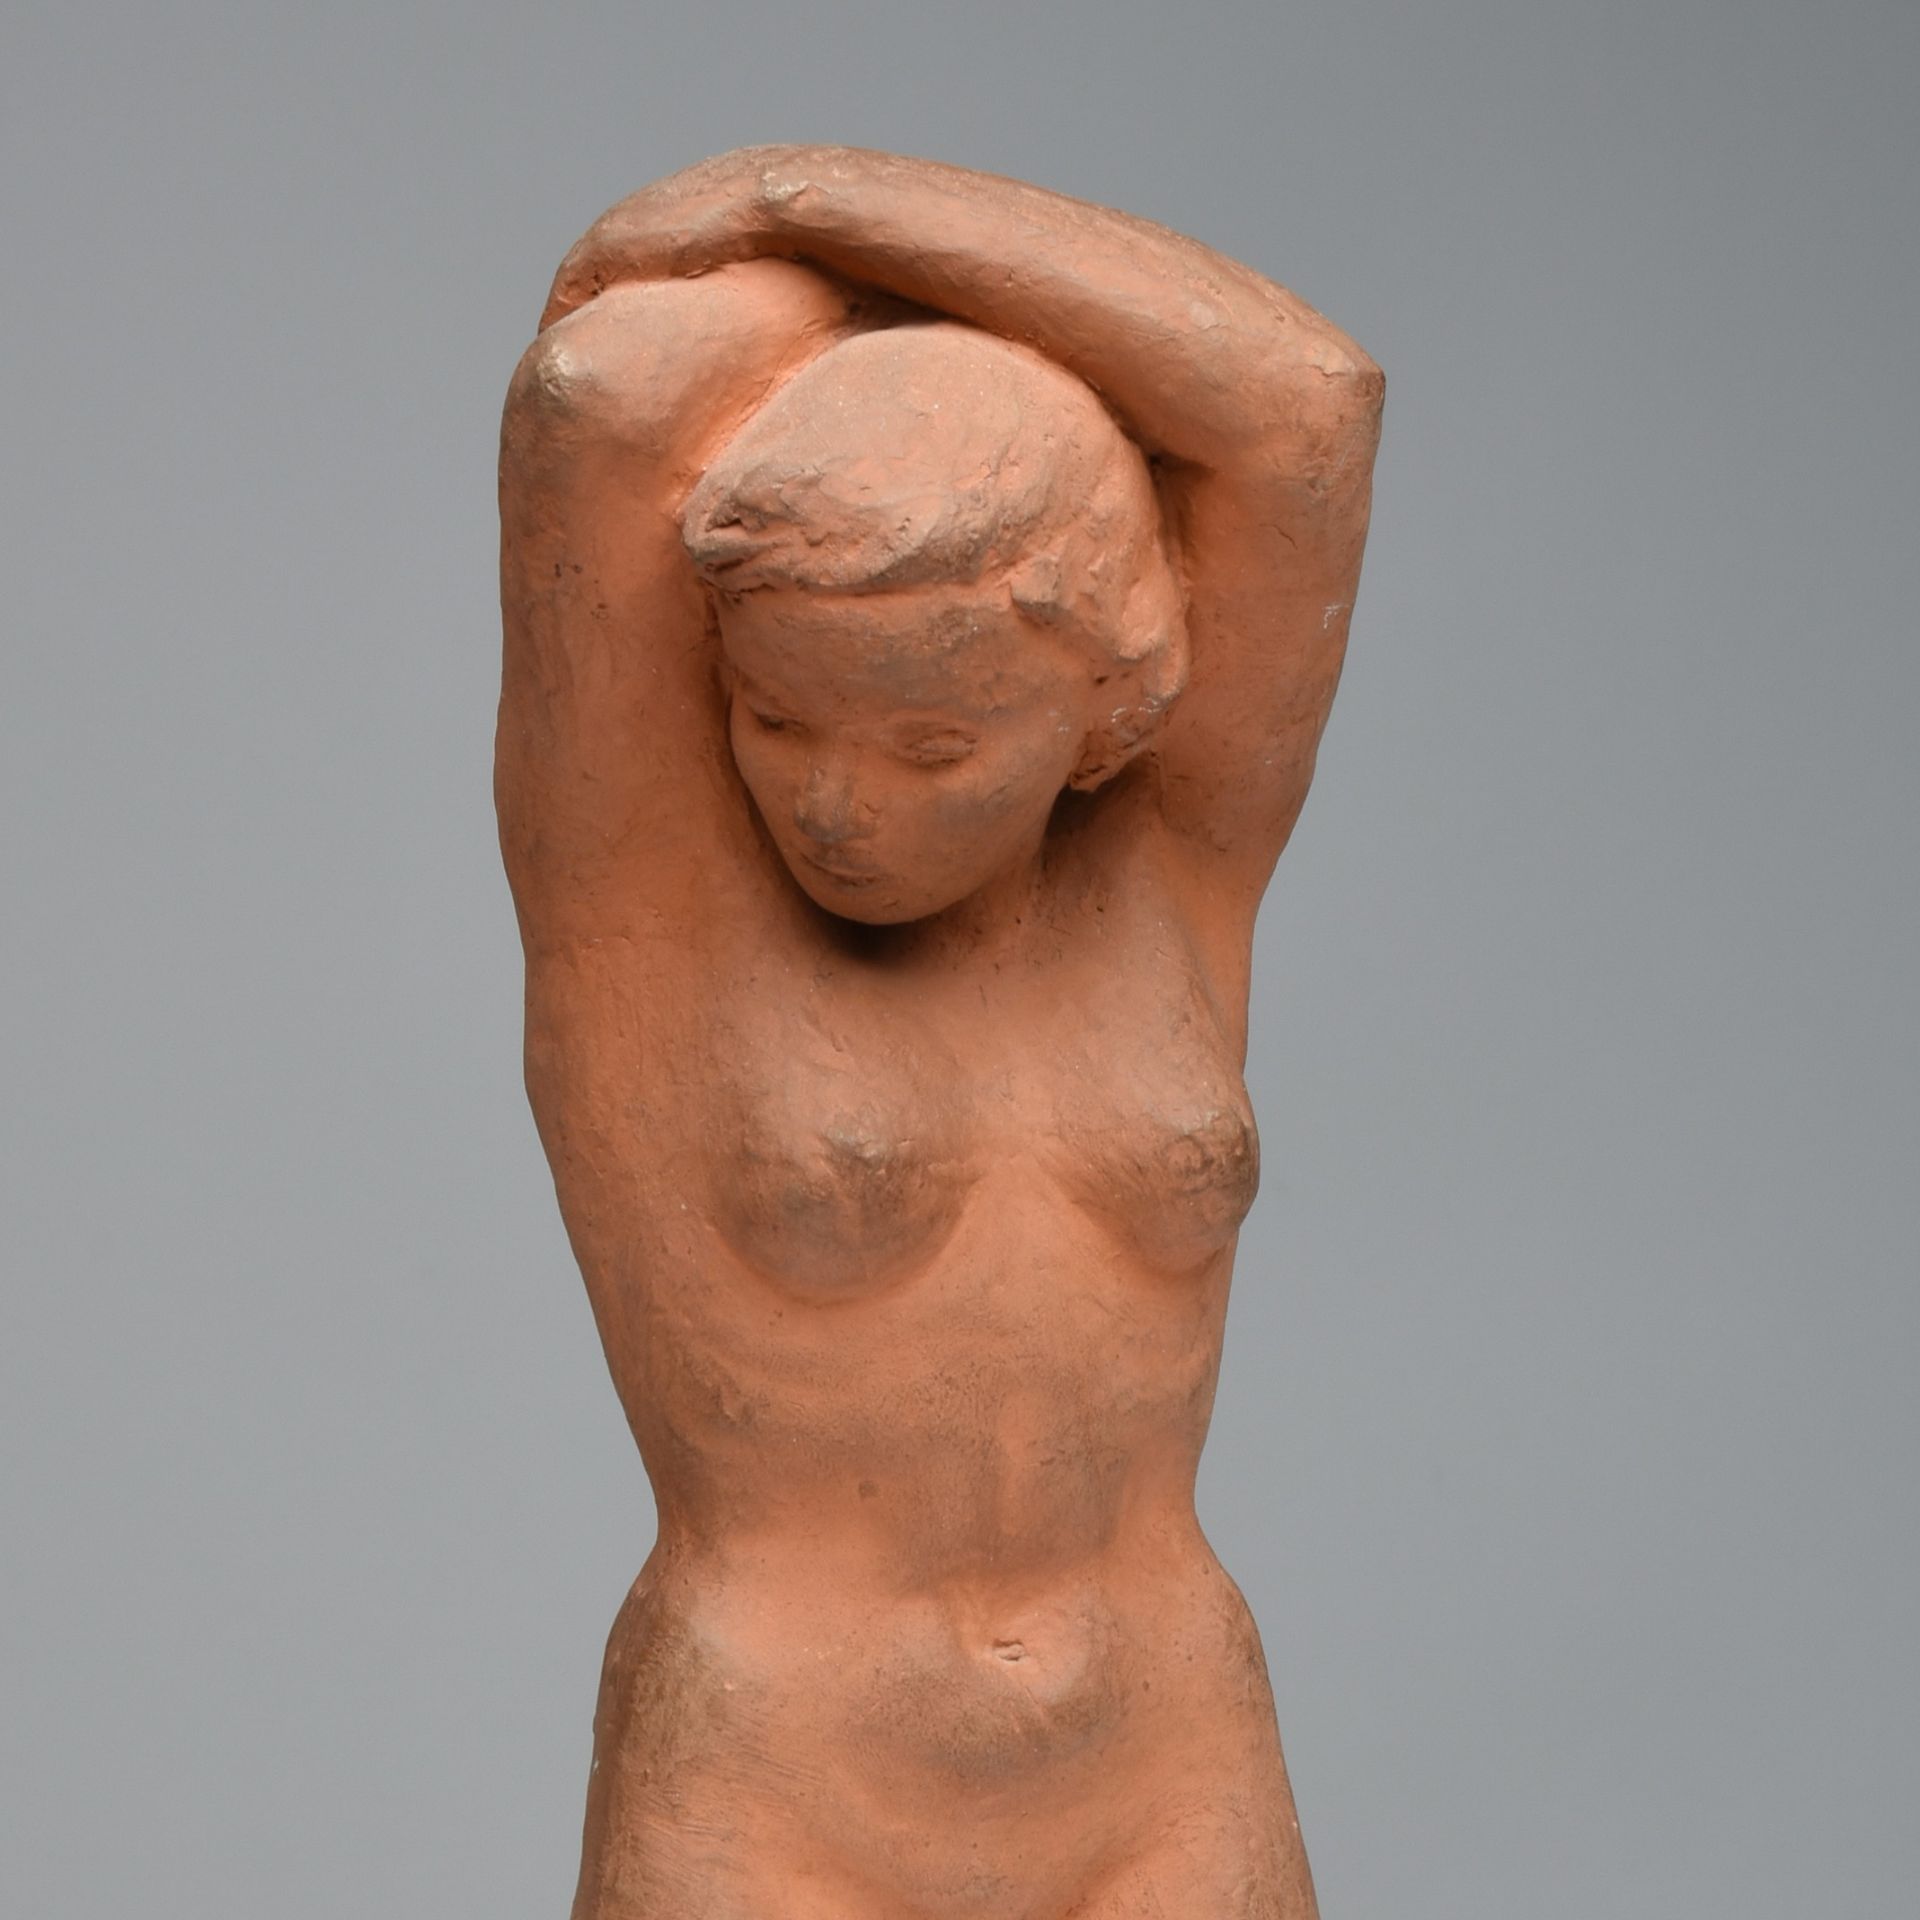 Doerr-Niessner, Lore (1920 Stuttgart - 1983 Hardt) Keramik, unbekleidete Figur einer jungen Frau mit